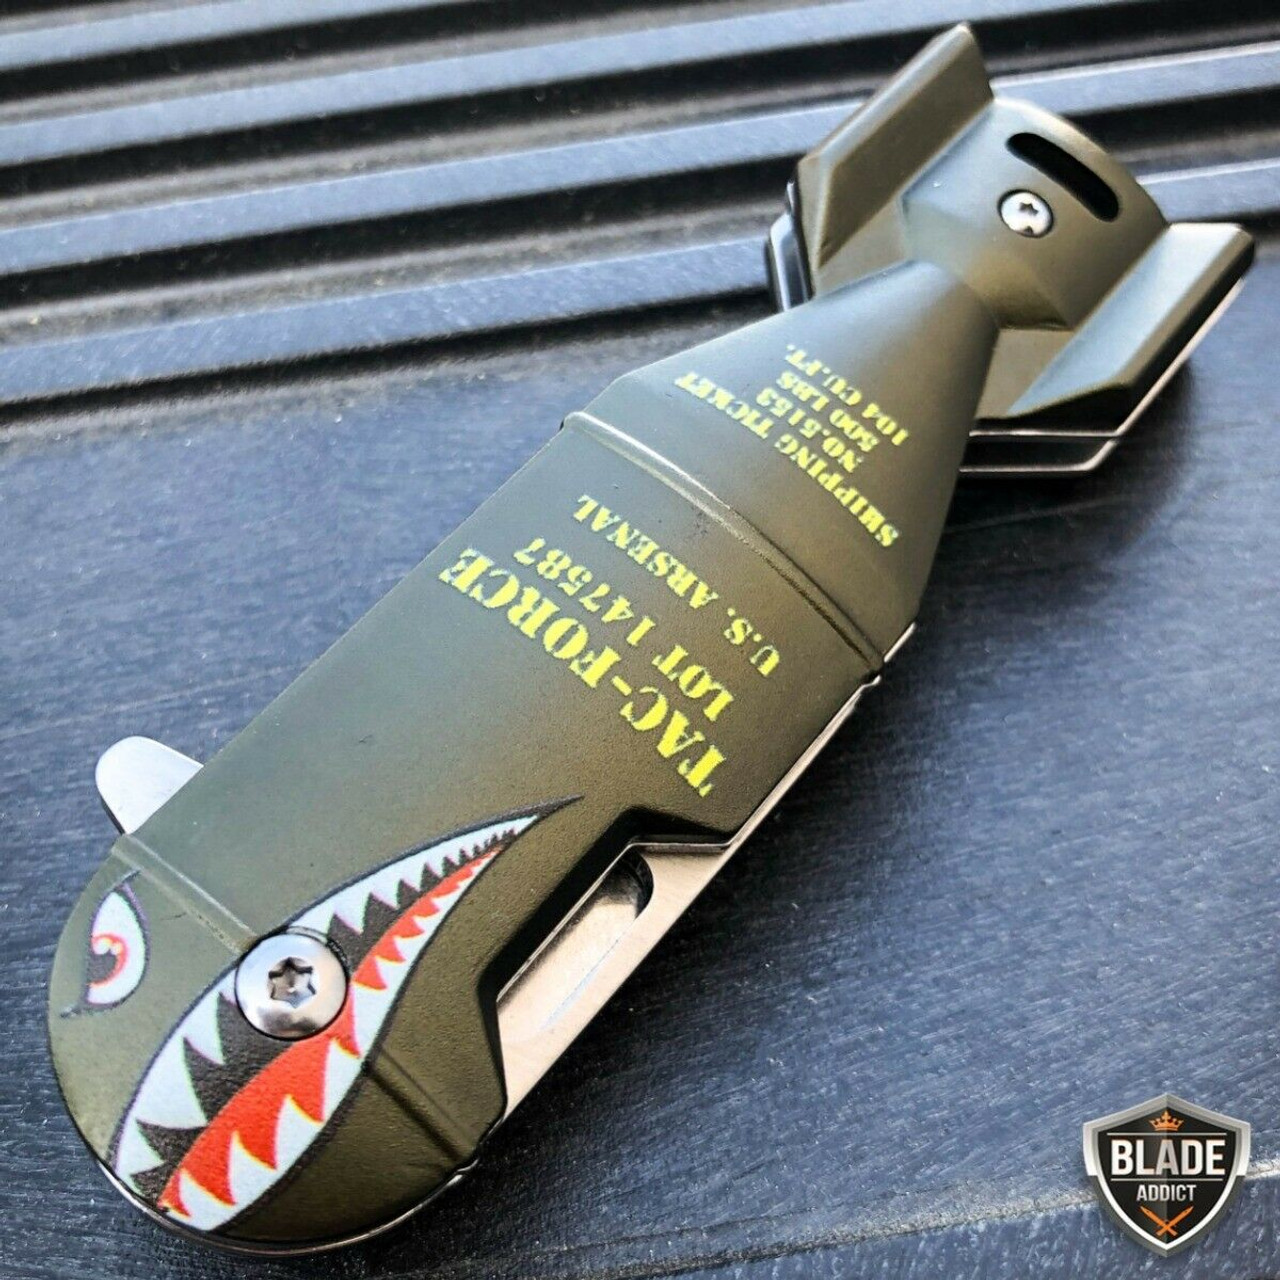 8 TAC FORCE MILITARY PINK SPRING ASSISTED TACTICAL FOLDING KNIFE Blade  Pocket - MEGAKNIFE